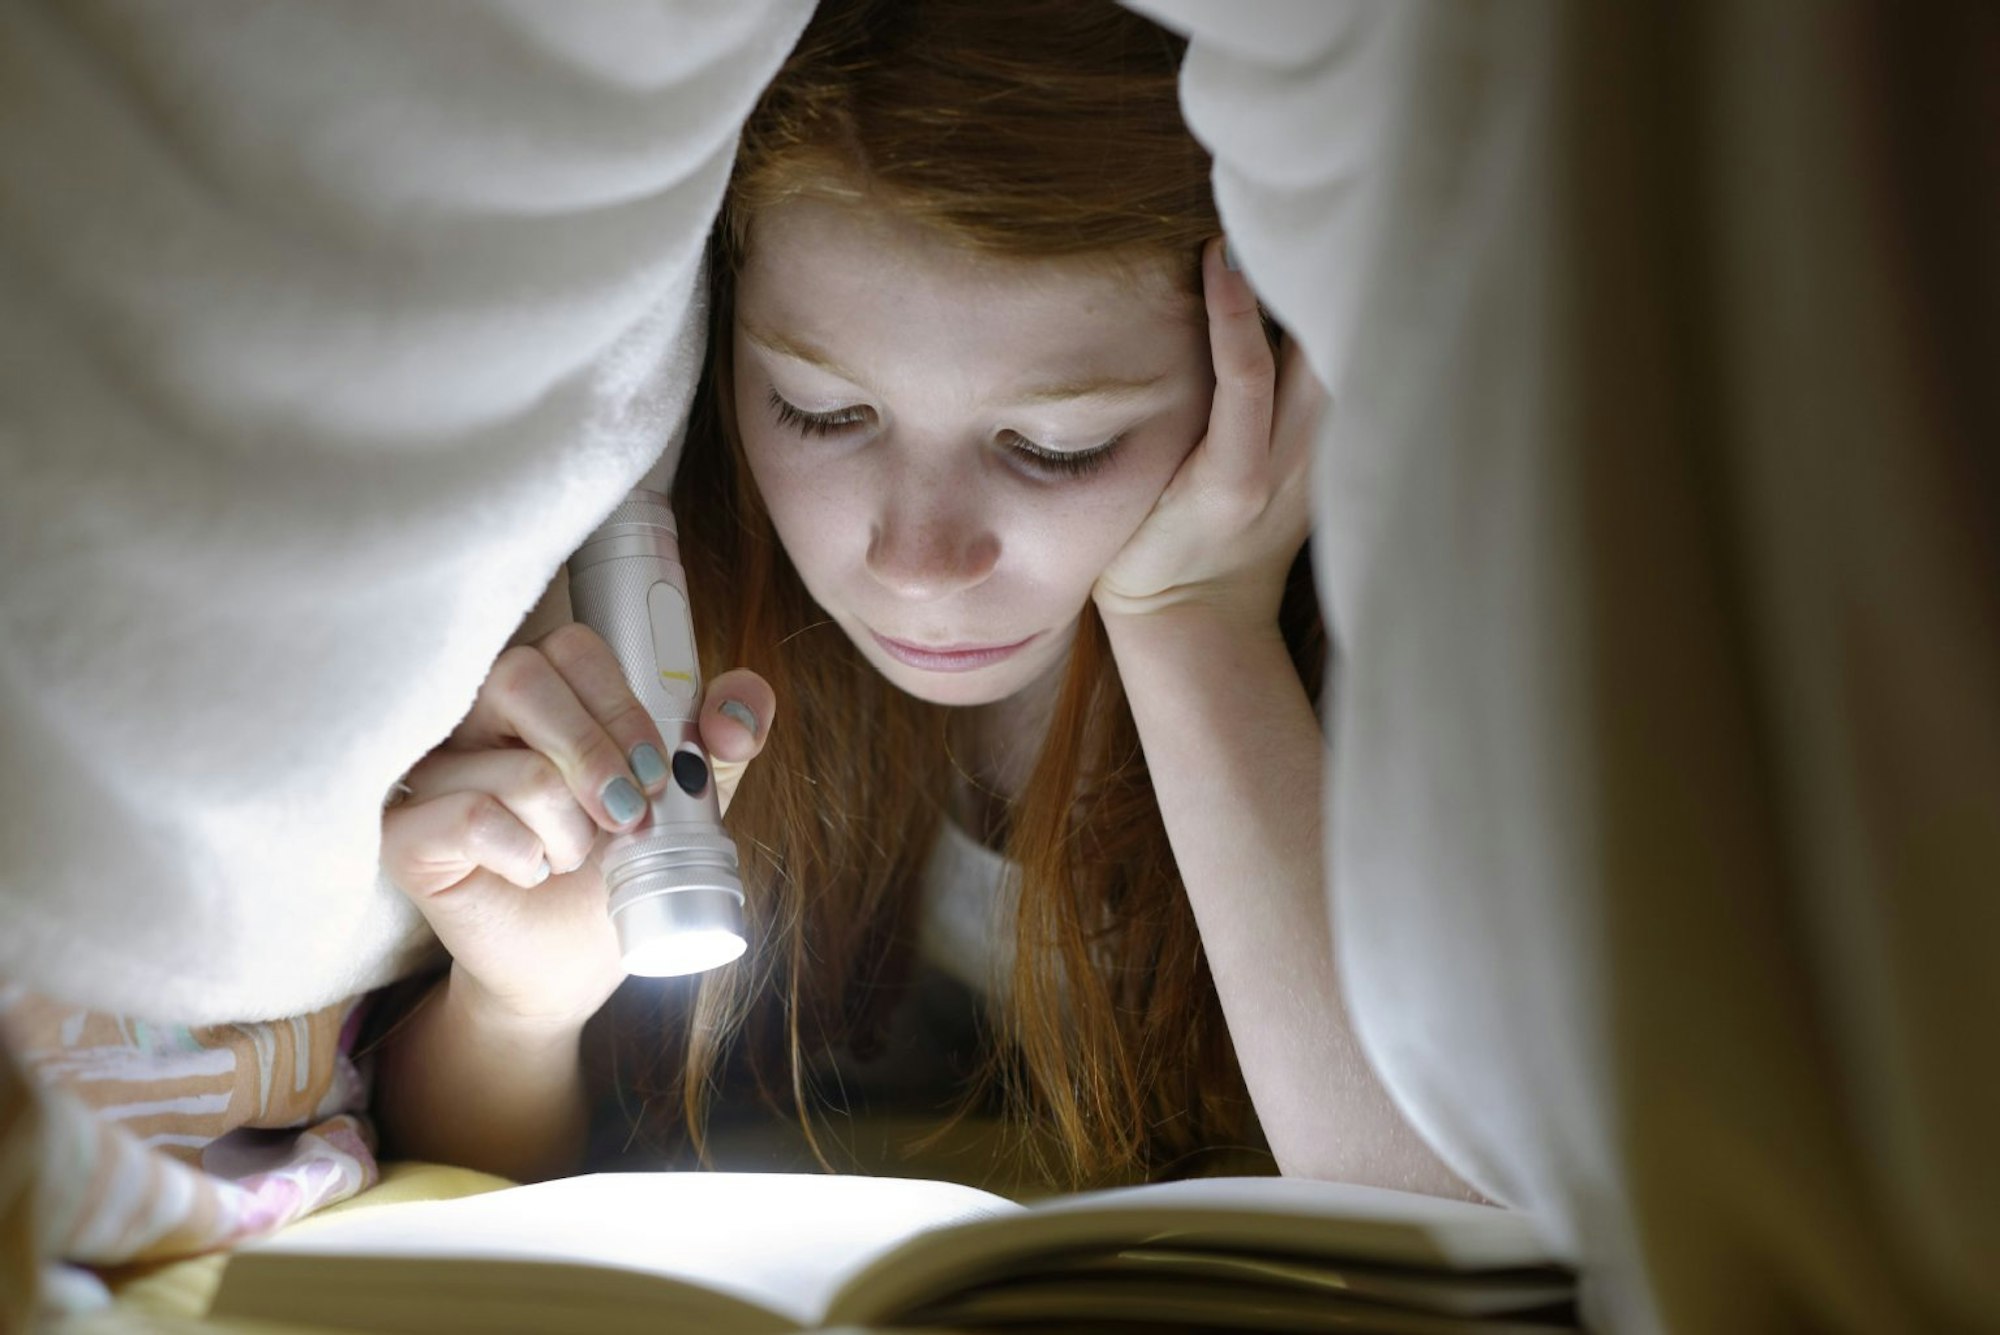 Lesen mit der Taschenlampe unter der Bettdecke ist schädlich für die Augen? Nein, es strengt sie jedoch mehr an und dadurch ermüden die Augen schneller.